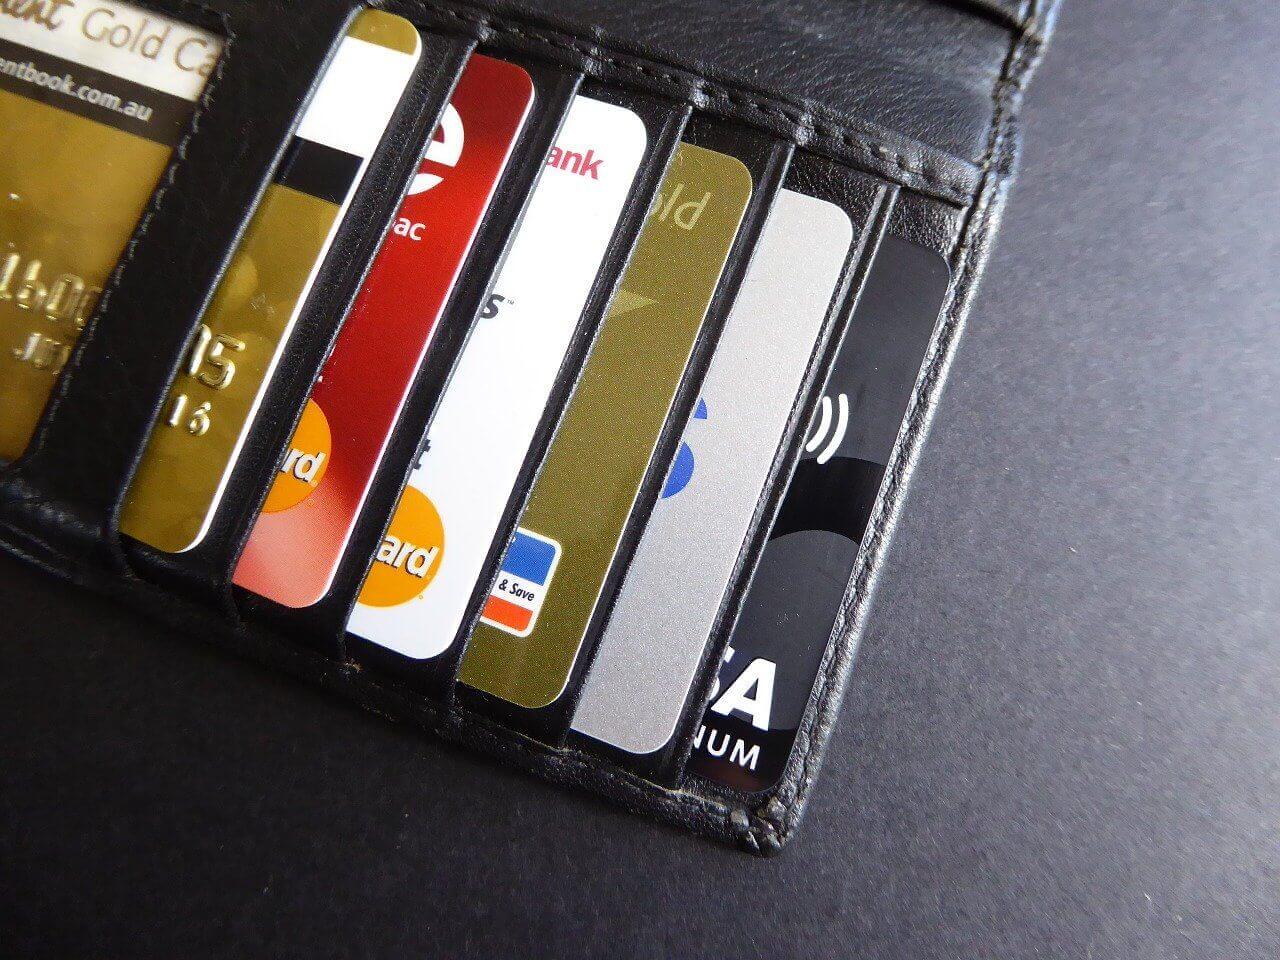 försäkringar ingår i kreditkort